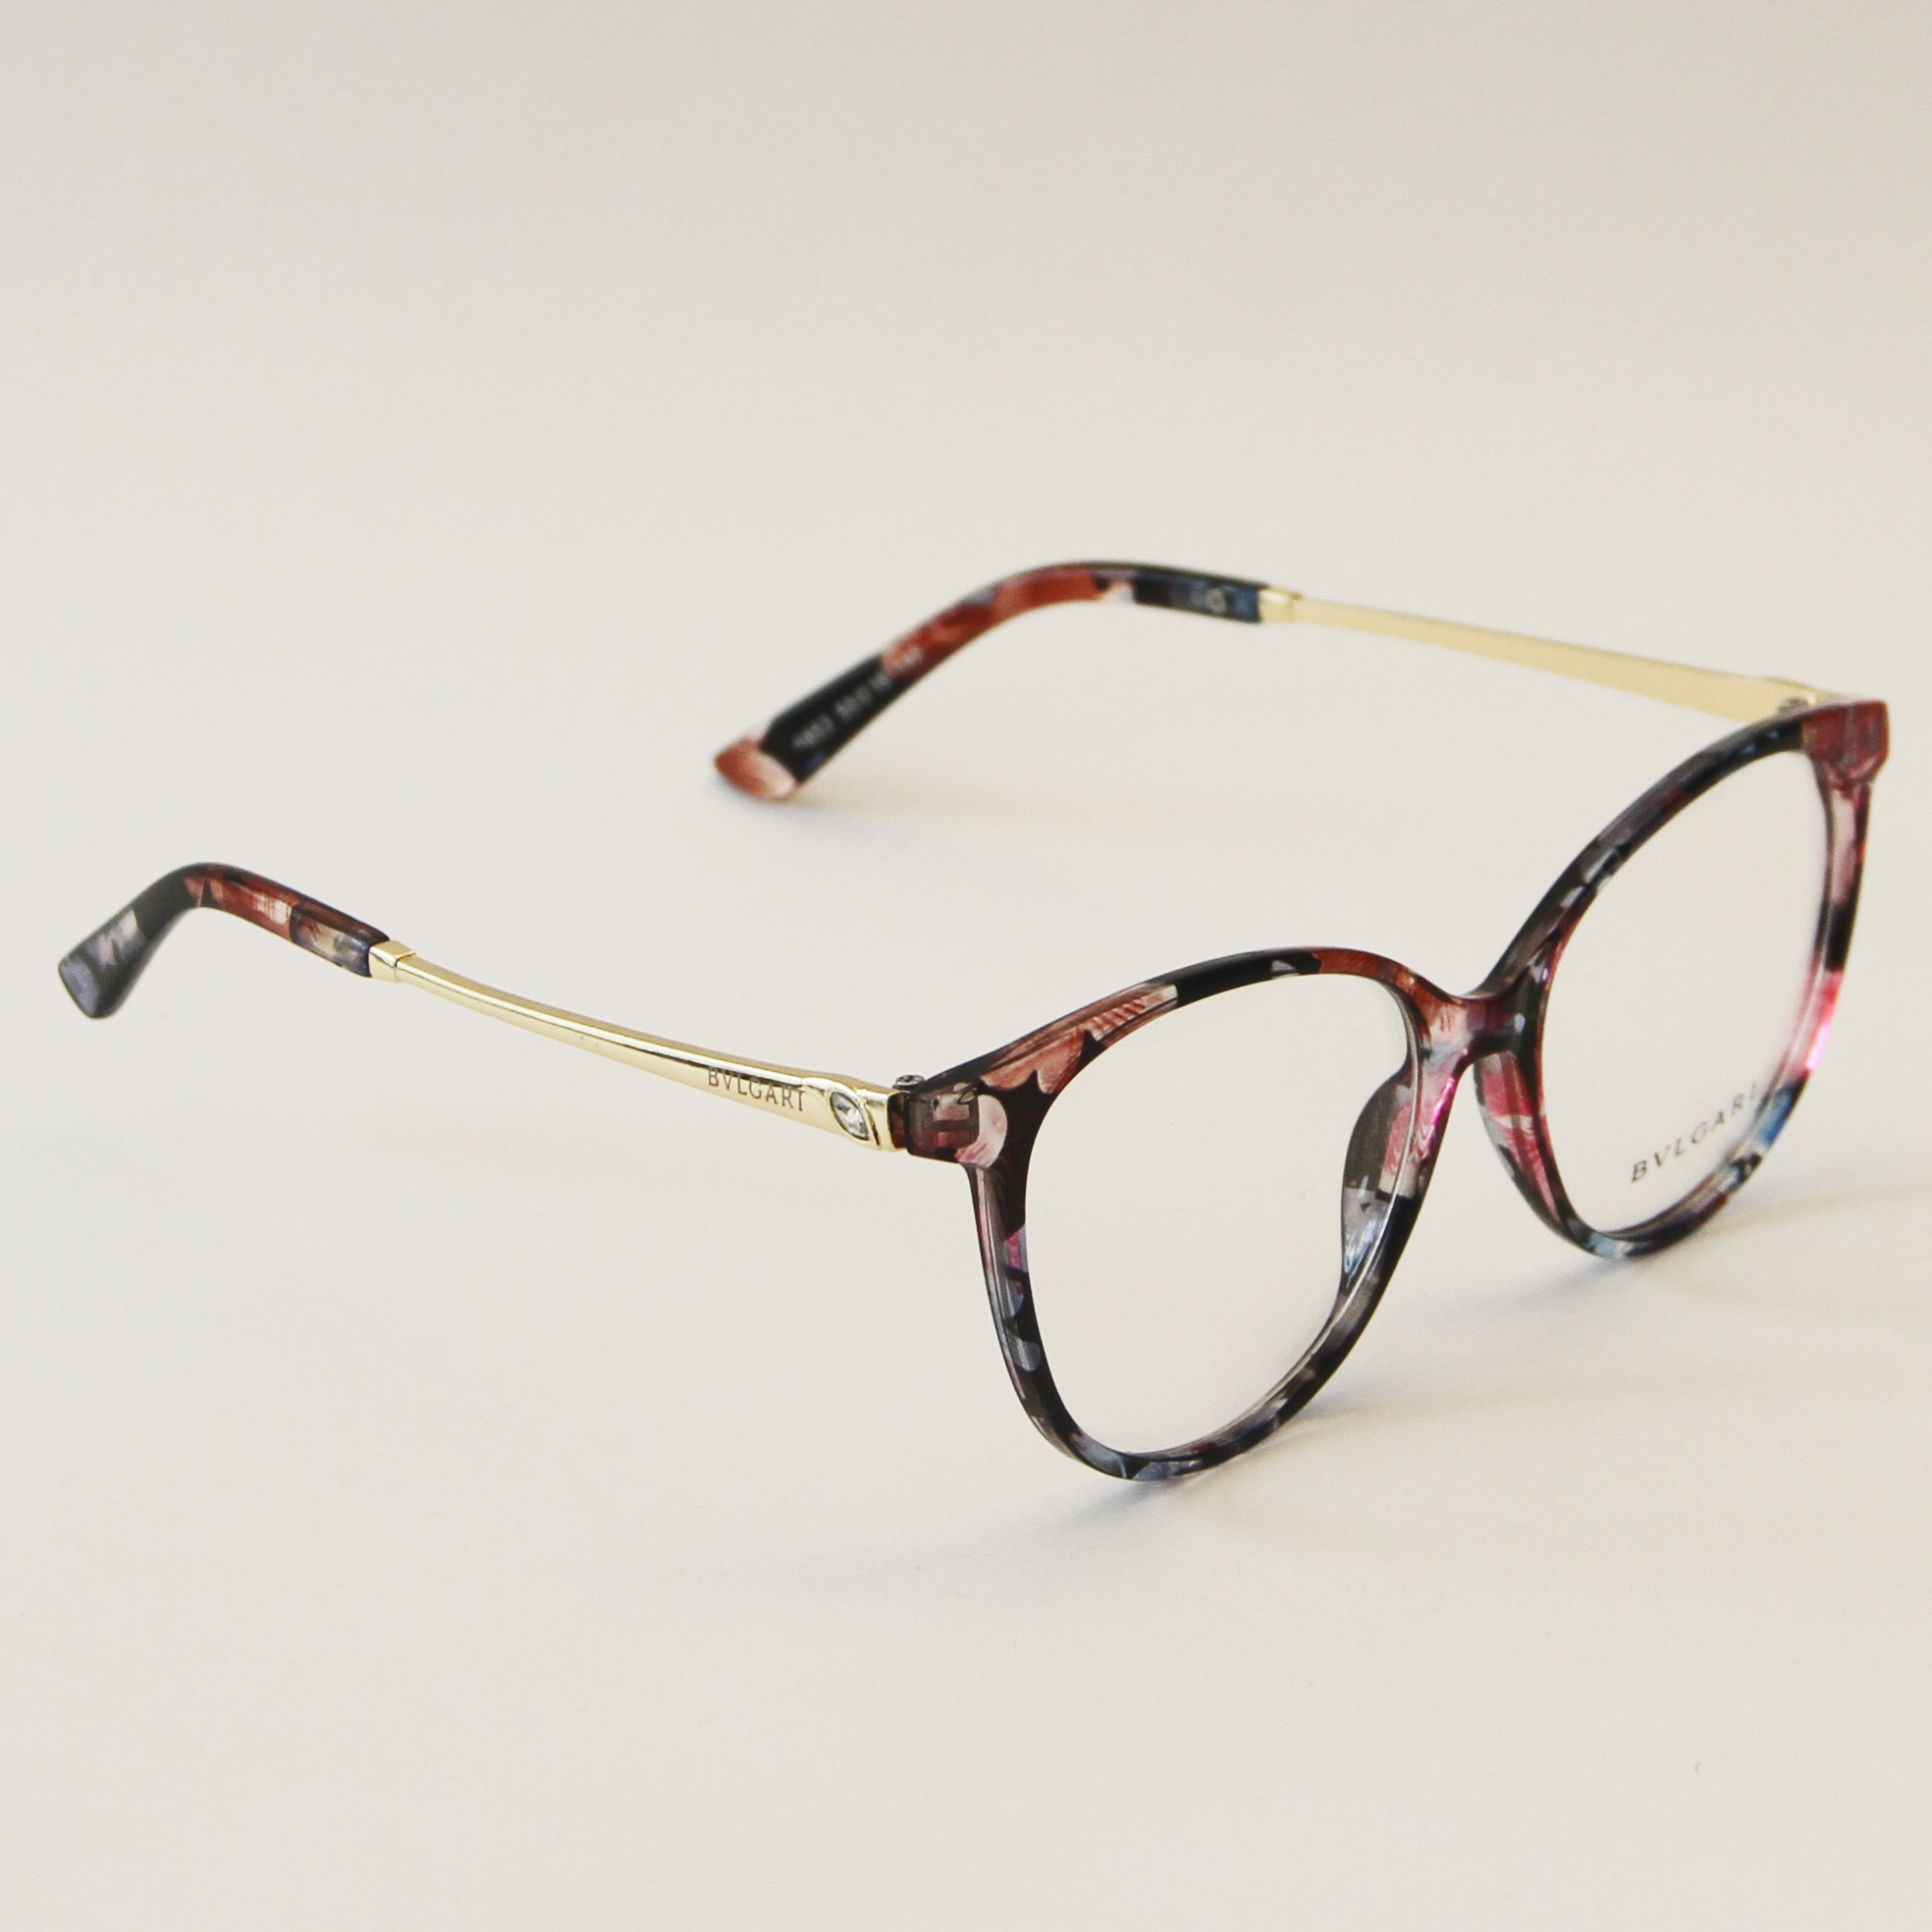 عینک طبی blvgari مدل 6853